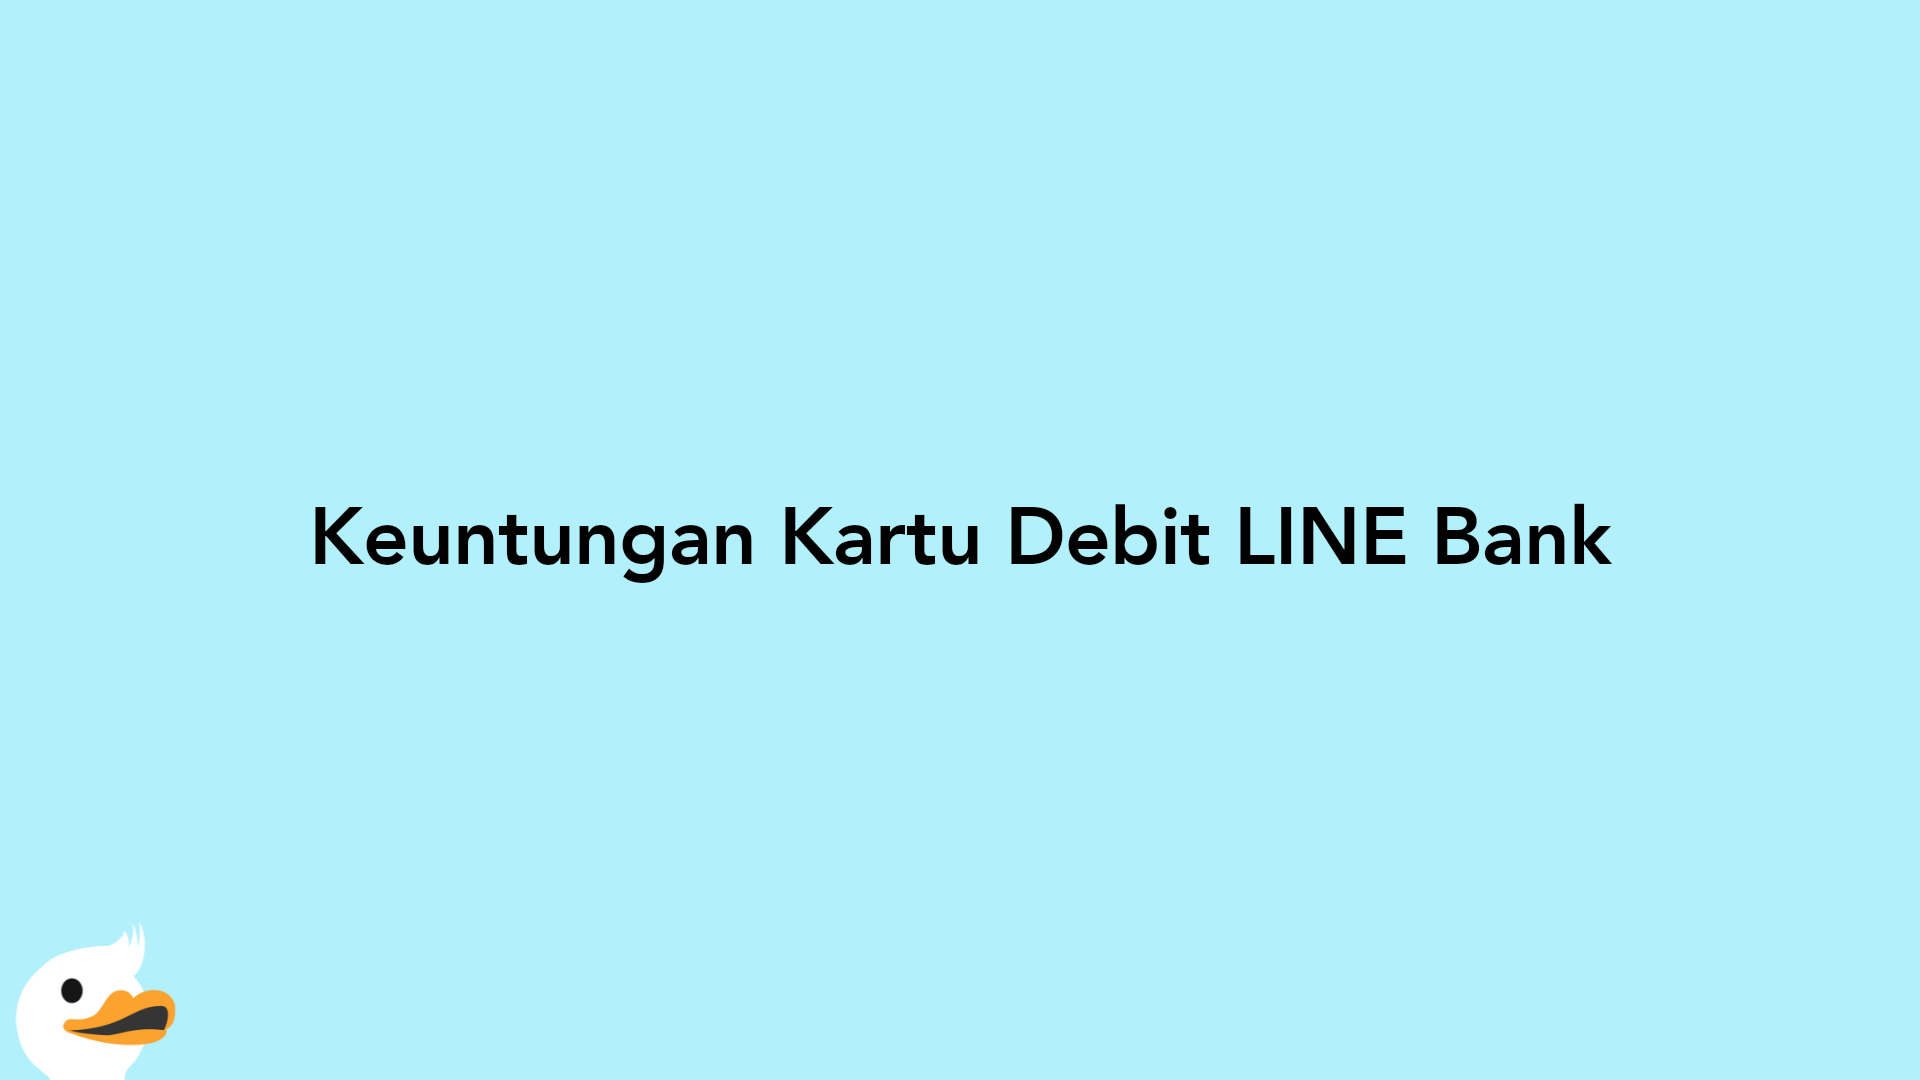 Keuntungan Kartu Debit LINE Bank